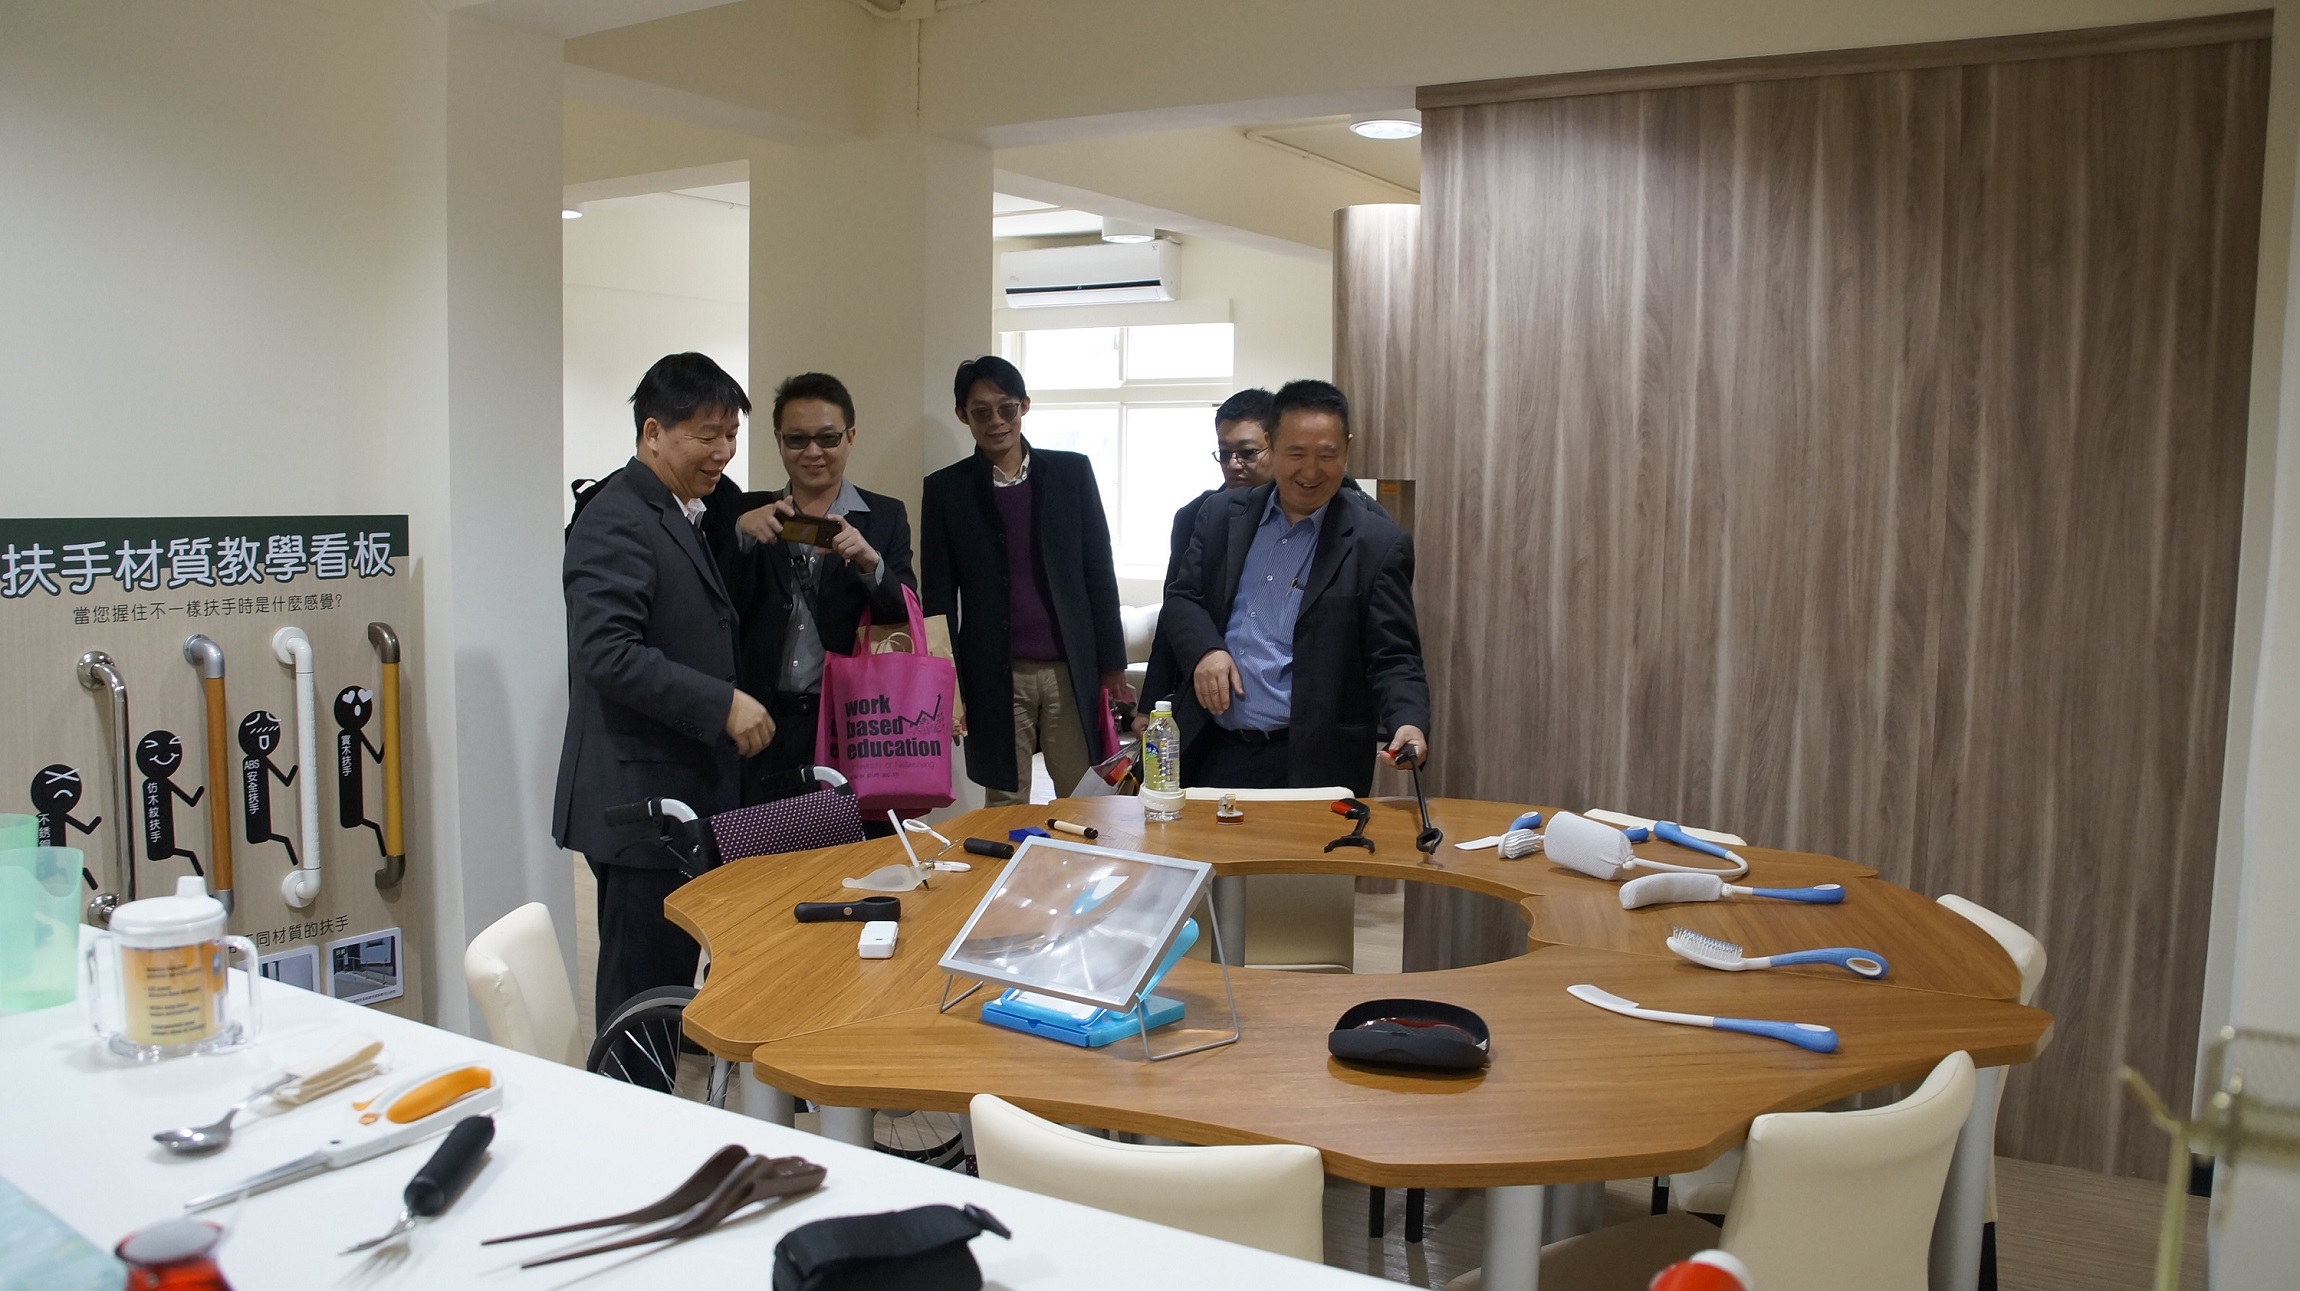 民生與設計學院王健行院長（左一）介紹老人服務事業系的教育環境，參訪團一行人對台灣的長照福利理念，與老人服務應用技術的先進發展，表示肯定與讚許